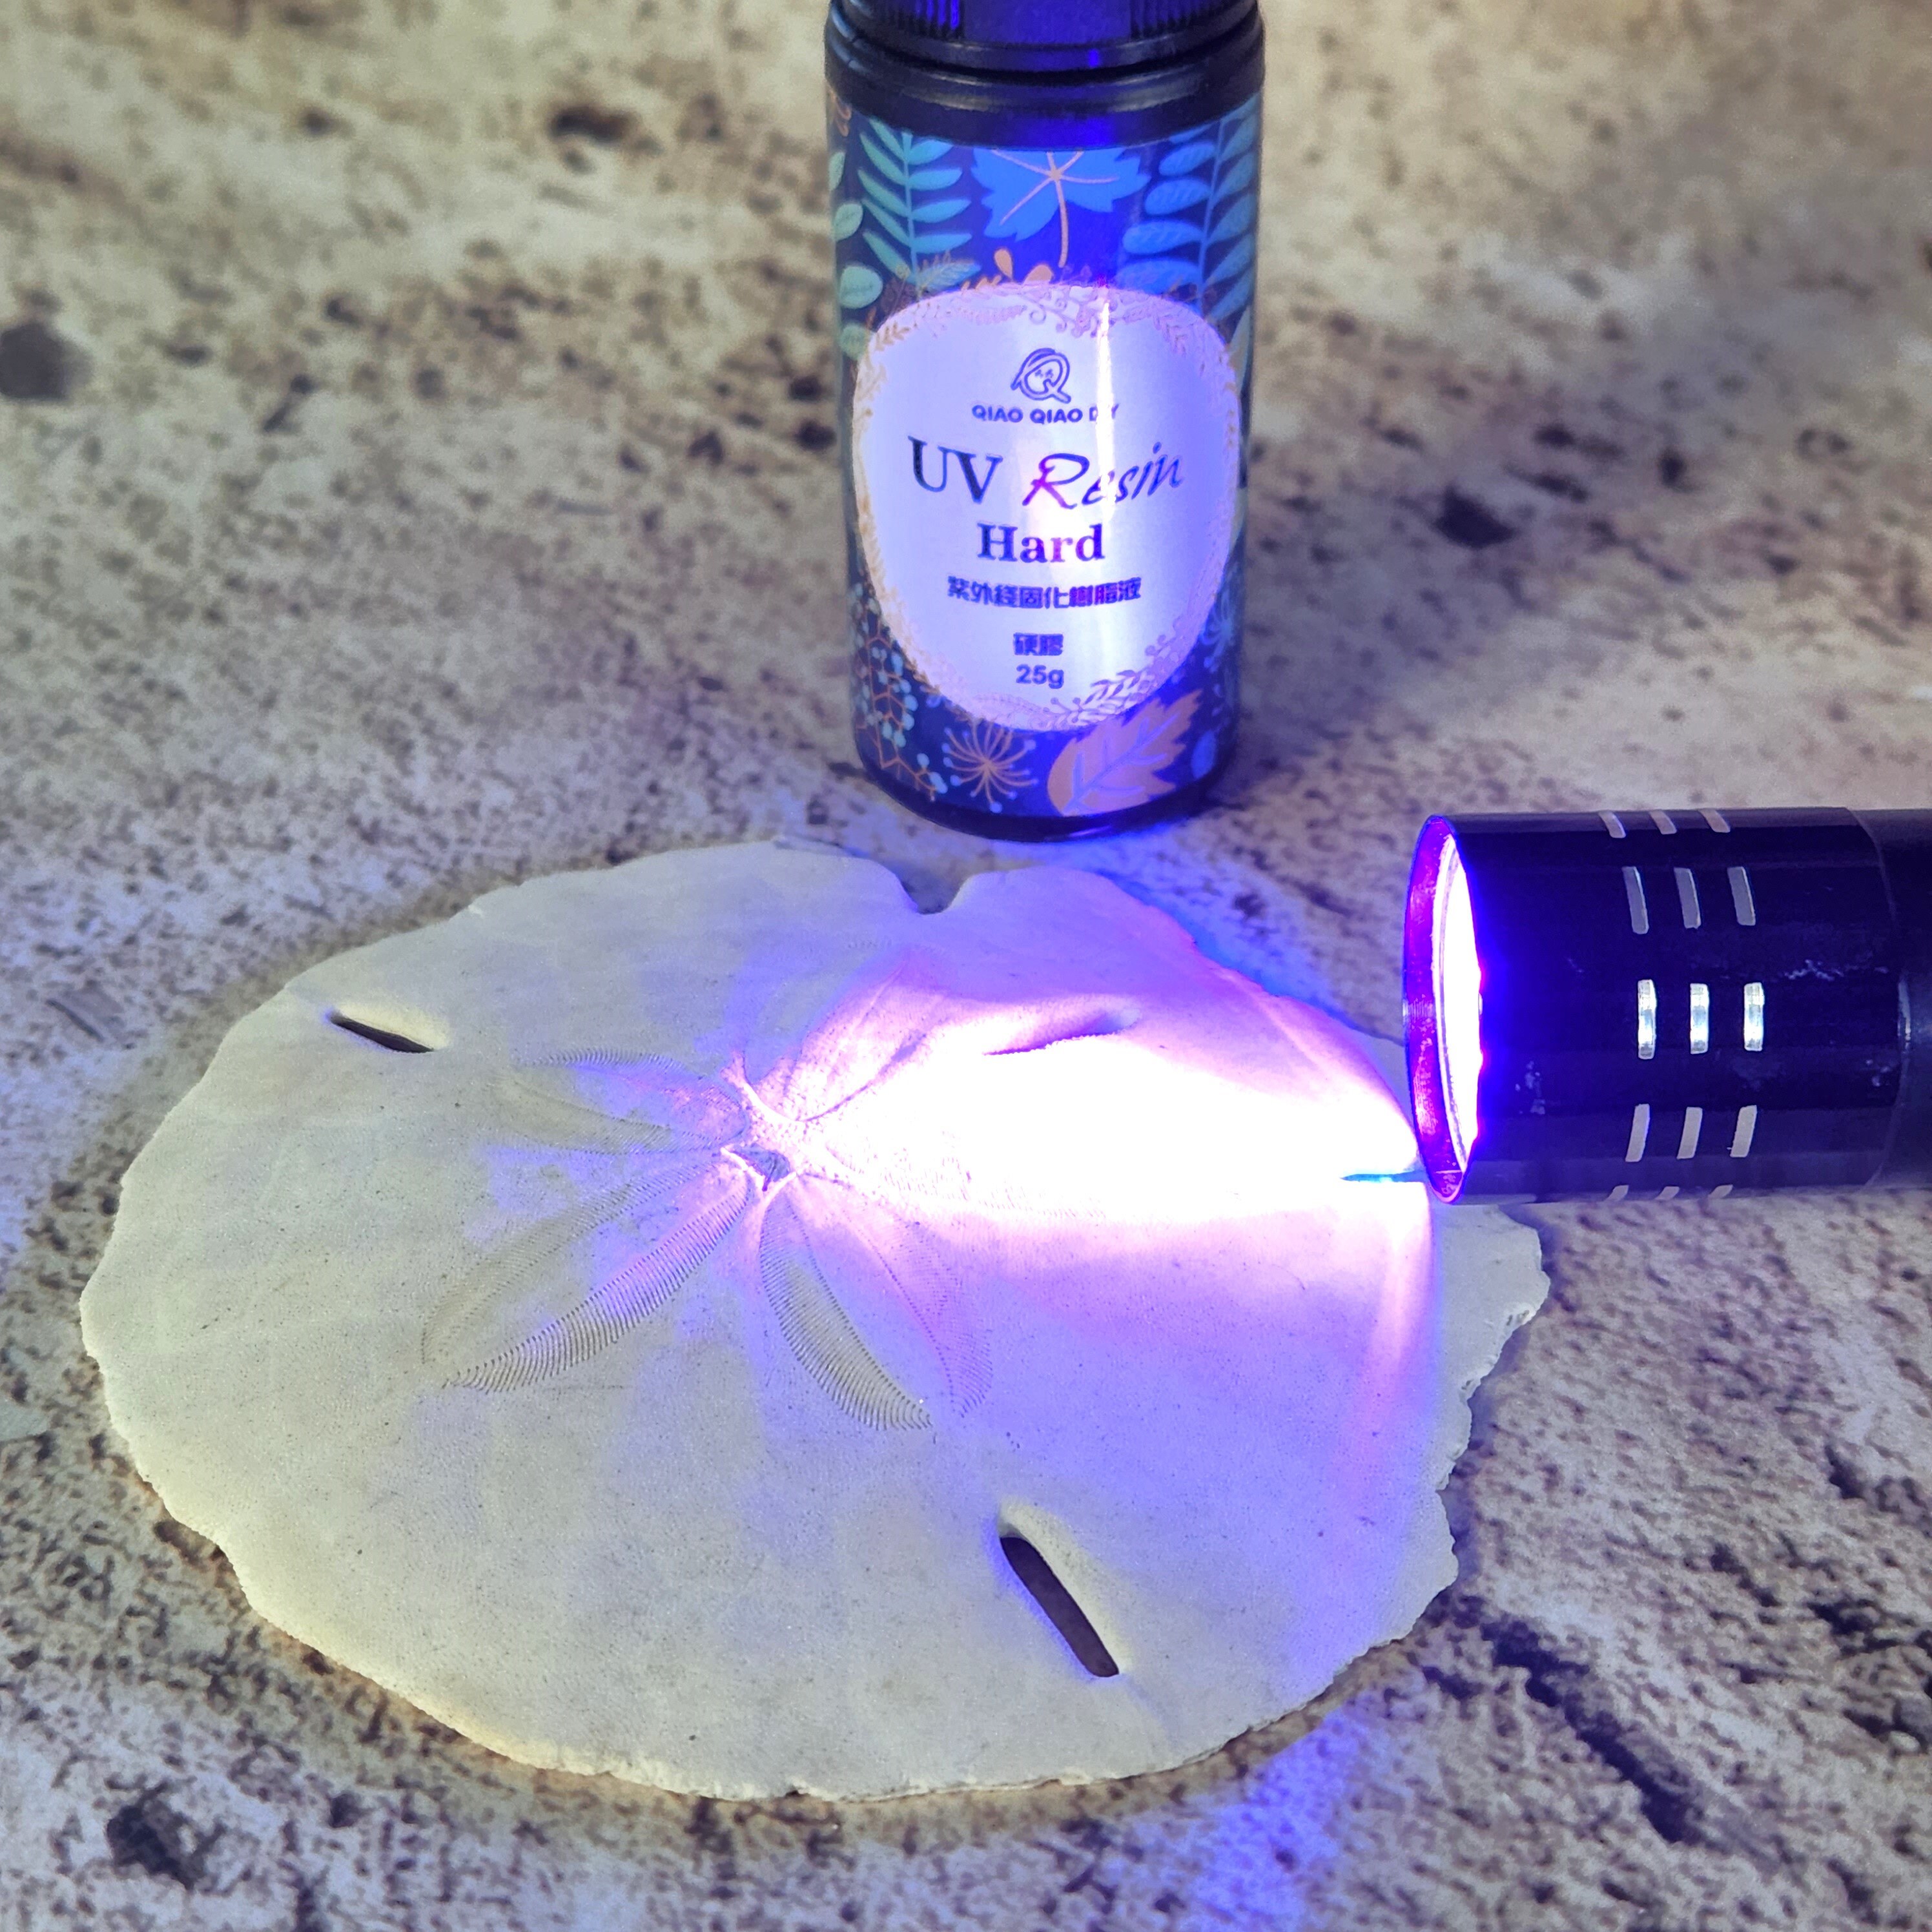 UV Resin Kit Beginner Resin Set UV Resin and Uv Light 25g Clear Hard UV  Resin, Uv Flashlight for Resin, Resin Supplies, Craft Kits 